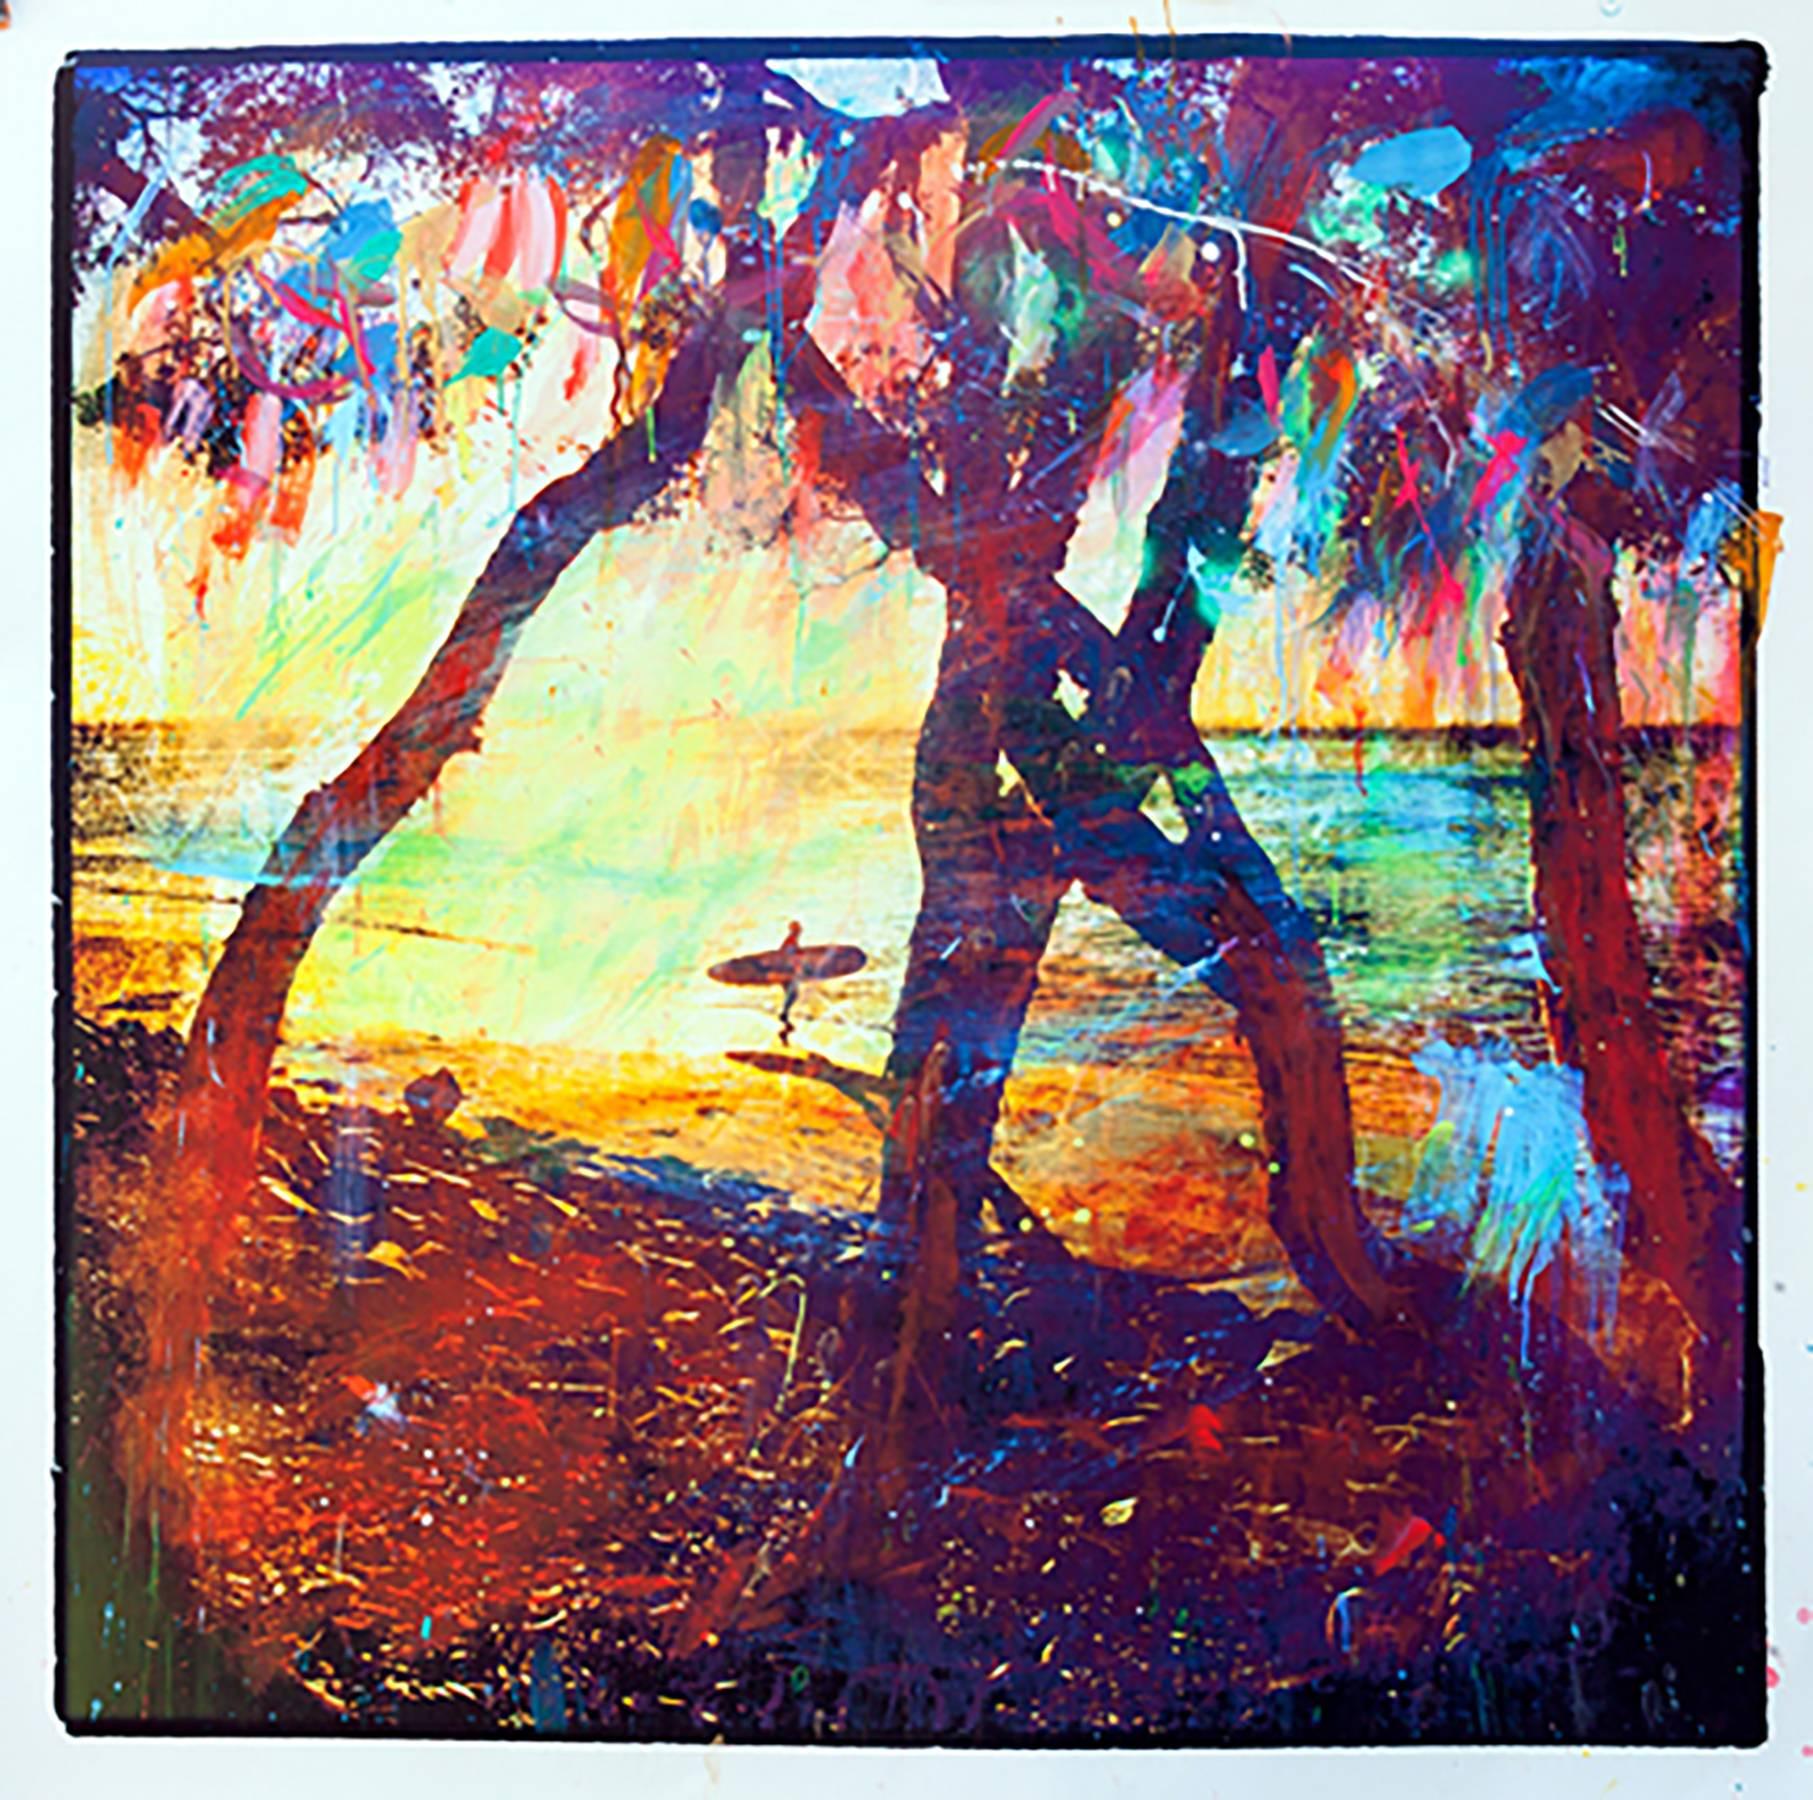 Memoria de Cancion, photographie peinte à la main en résine représentant un surfeur et une scène de plage